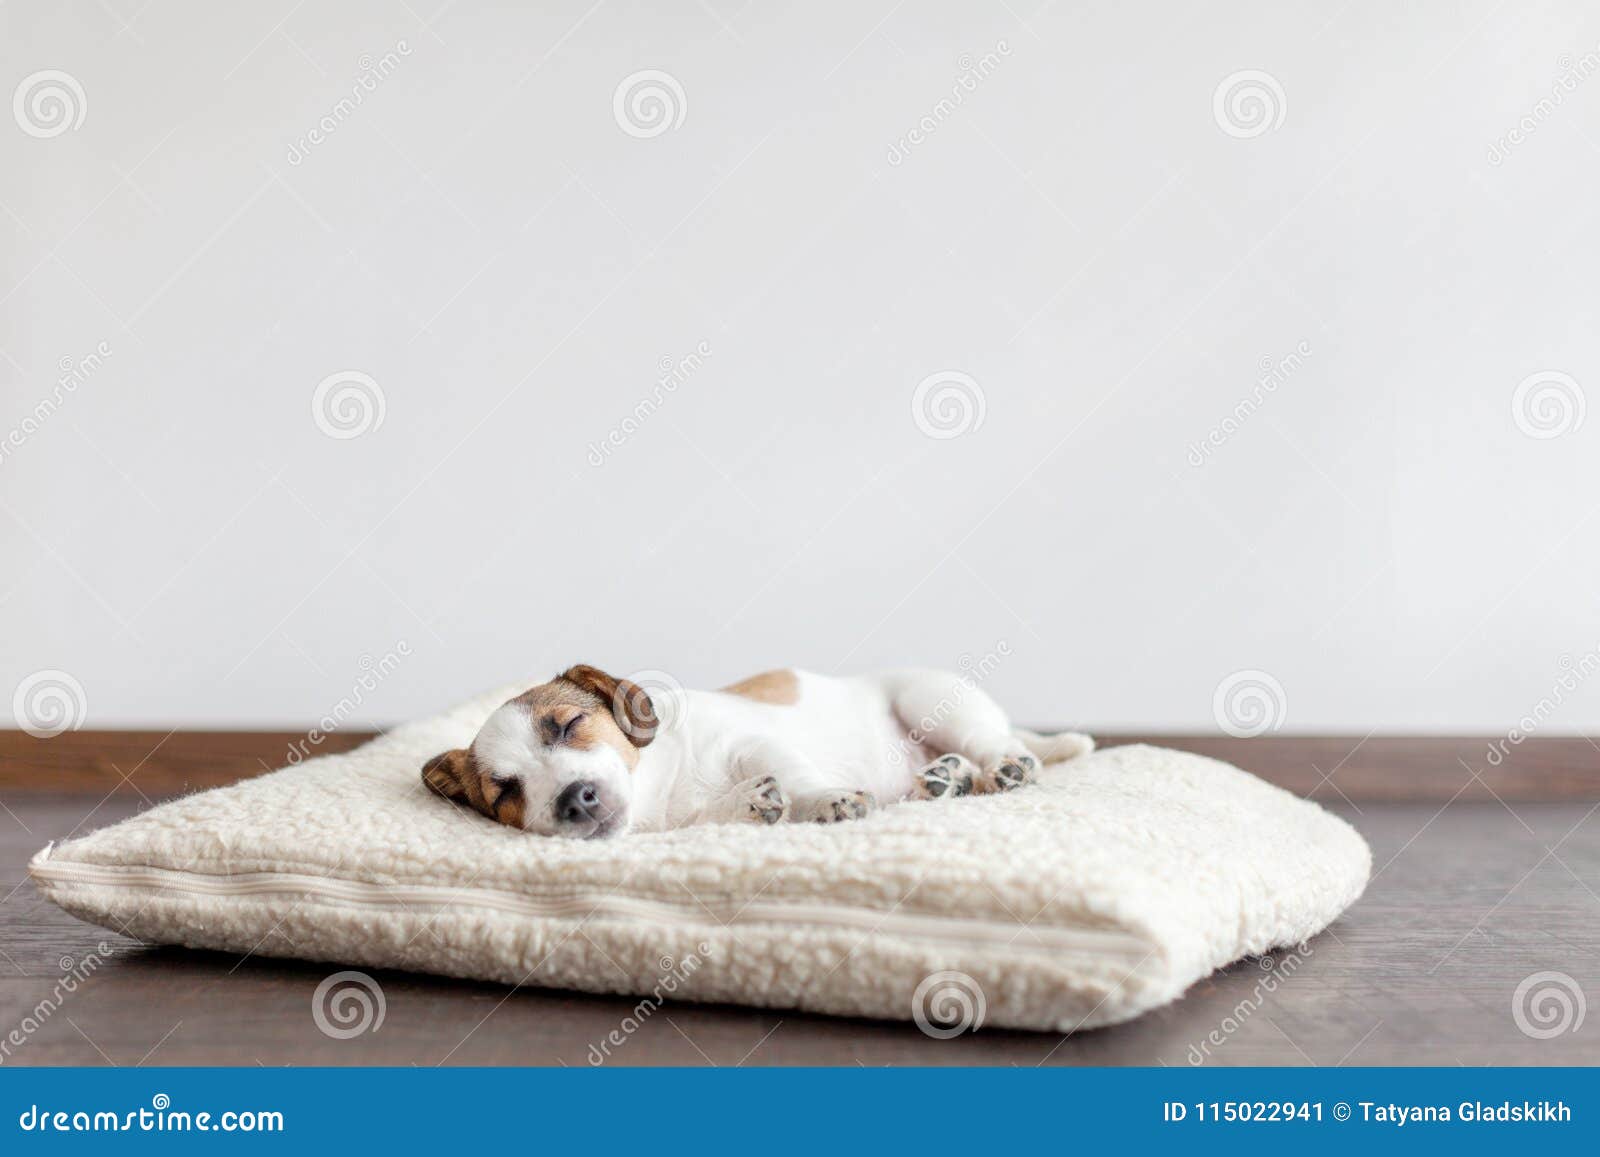 小小狗躺在床上条纹床单温暖舒适慵懒可爱